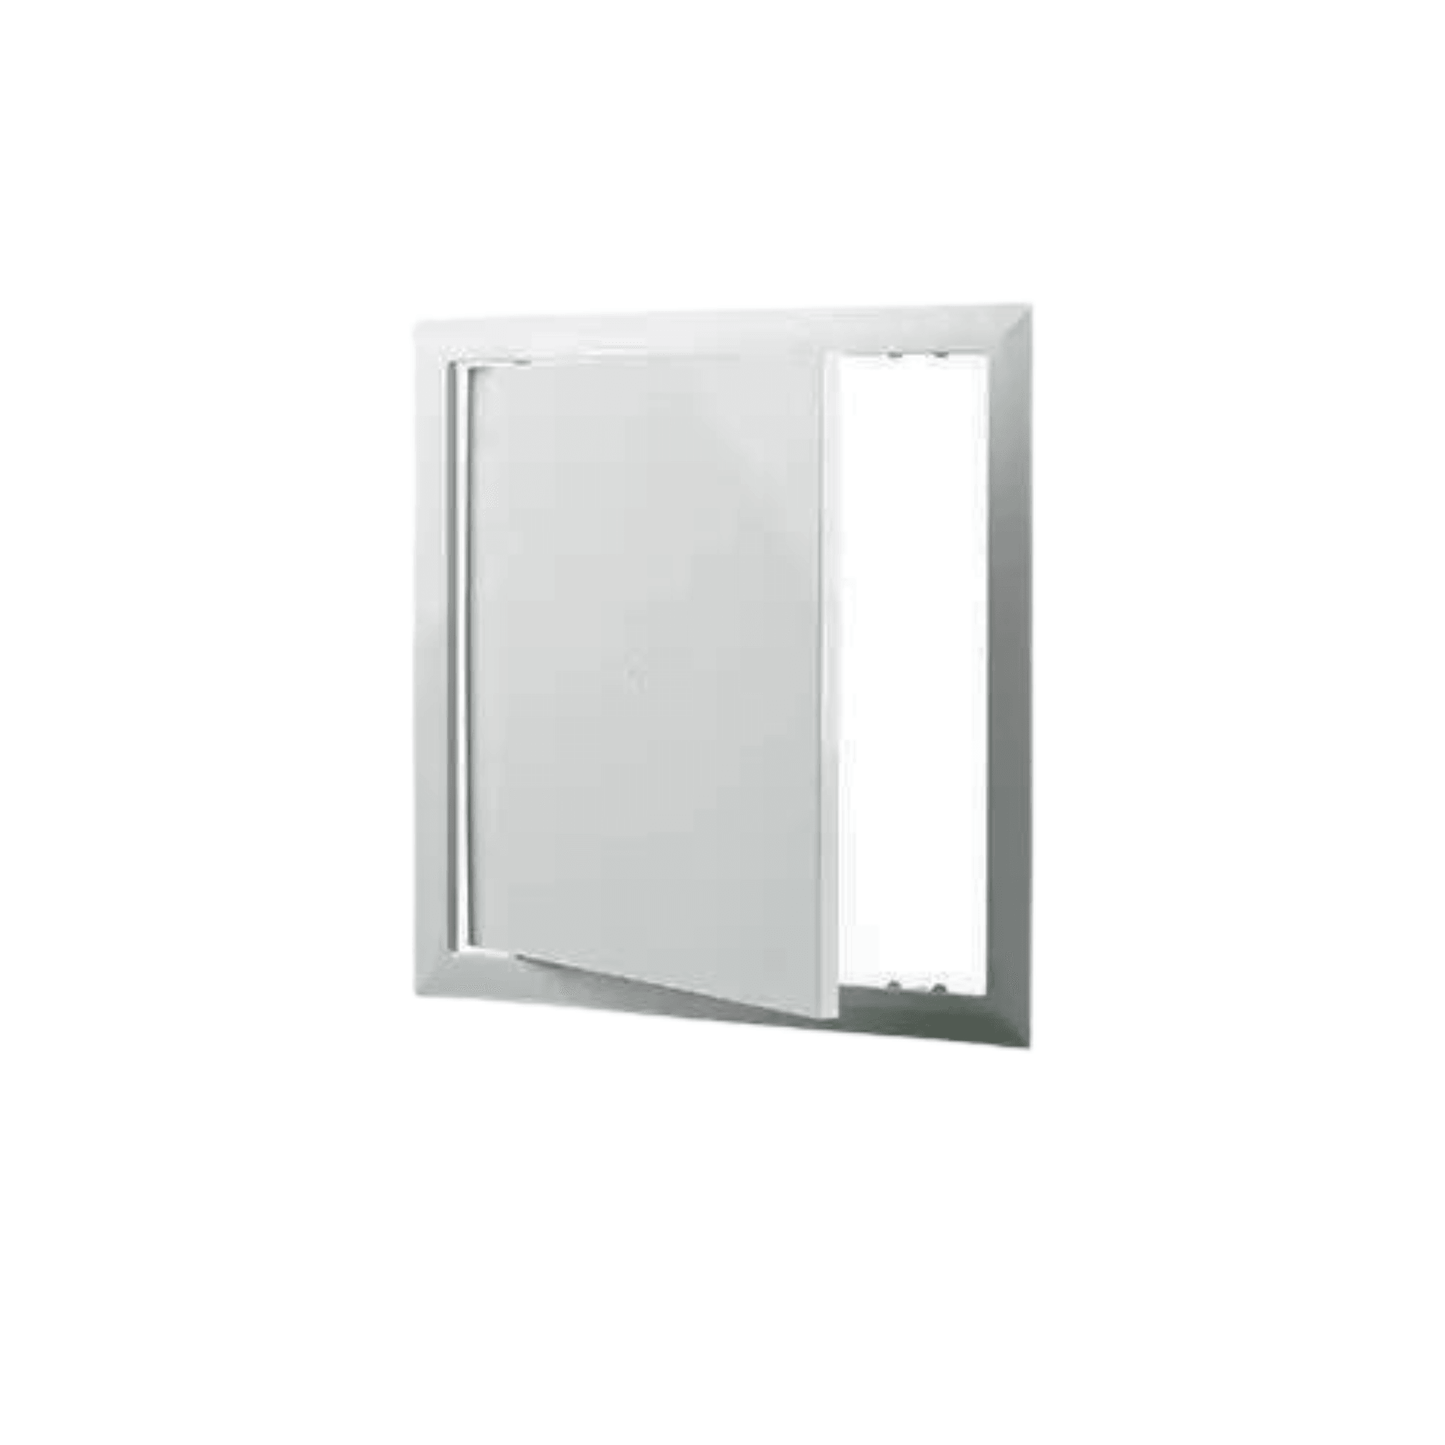 Vents D Series 10 3/4′′ x 10 3/4′′ Plastic Access Door